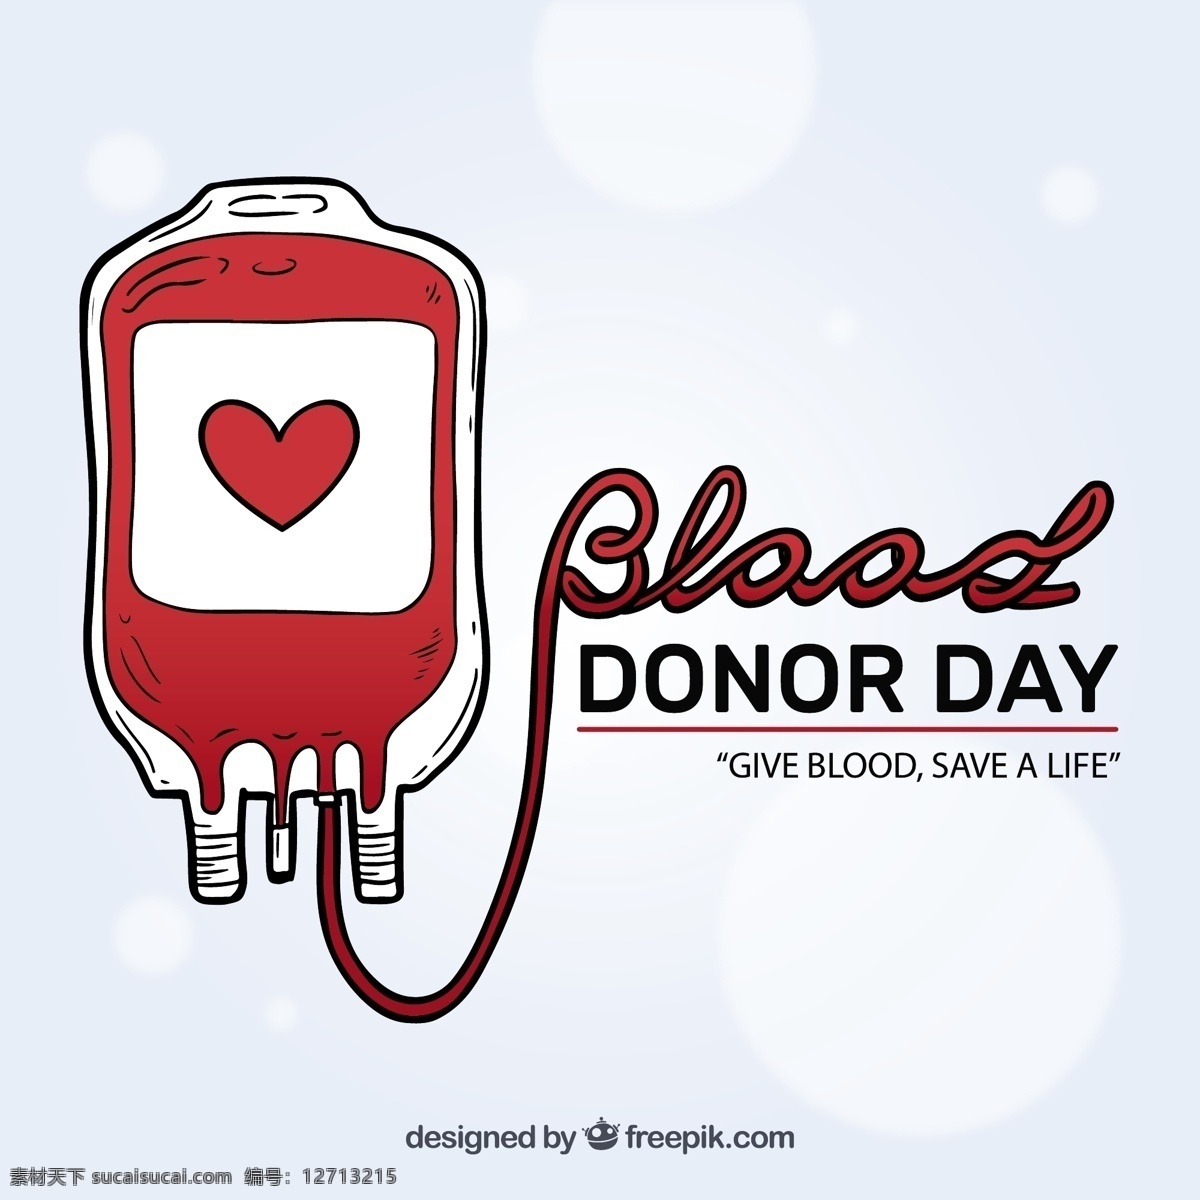 世界 献血者 日 输血 袋 图形 世界献血者日 输血袋